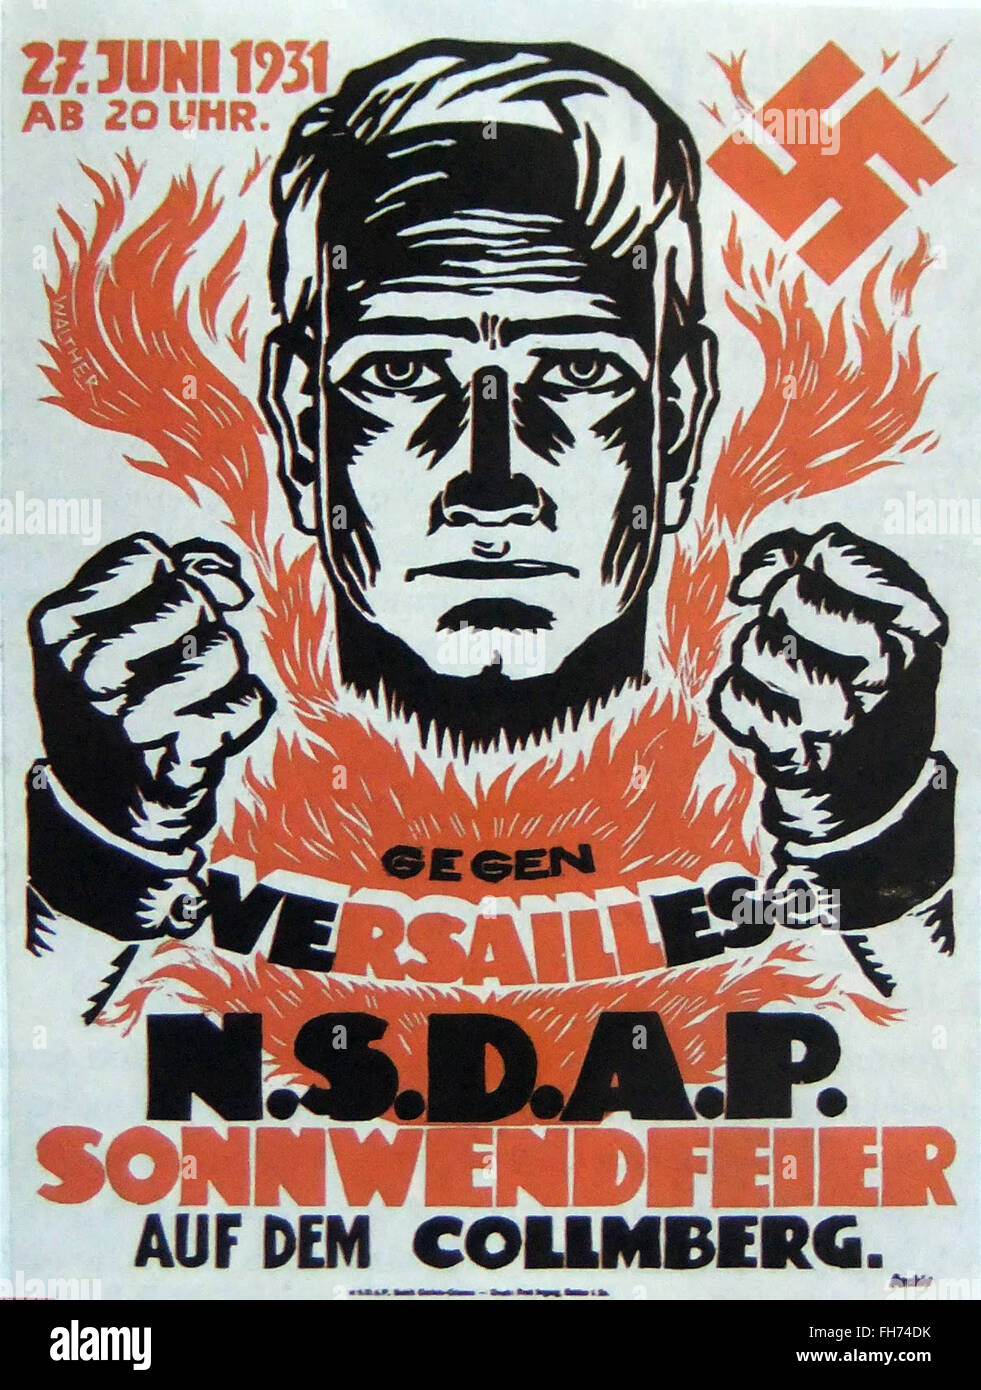 Gegen Versailles n s d a p sonnwendfeier - German Nazi Propaganda Poster - 1931 Stock Photo